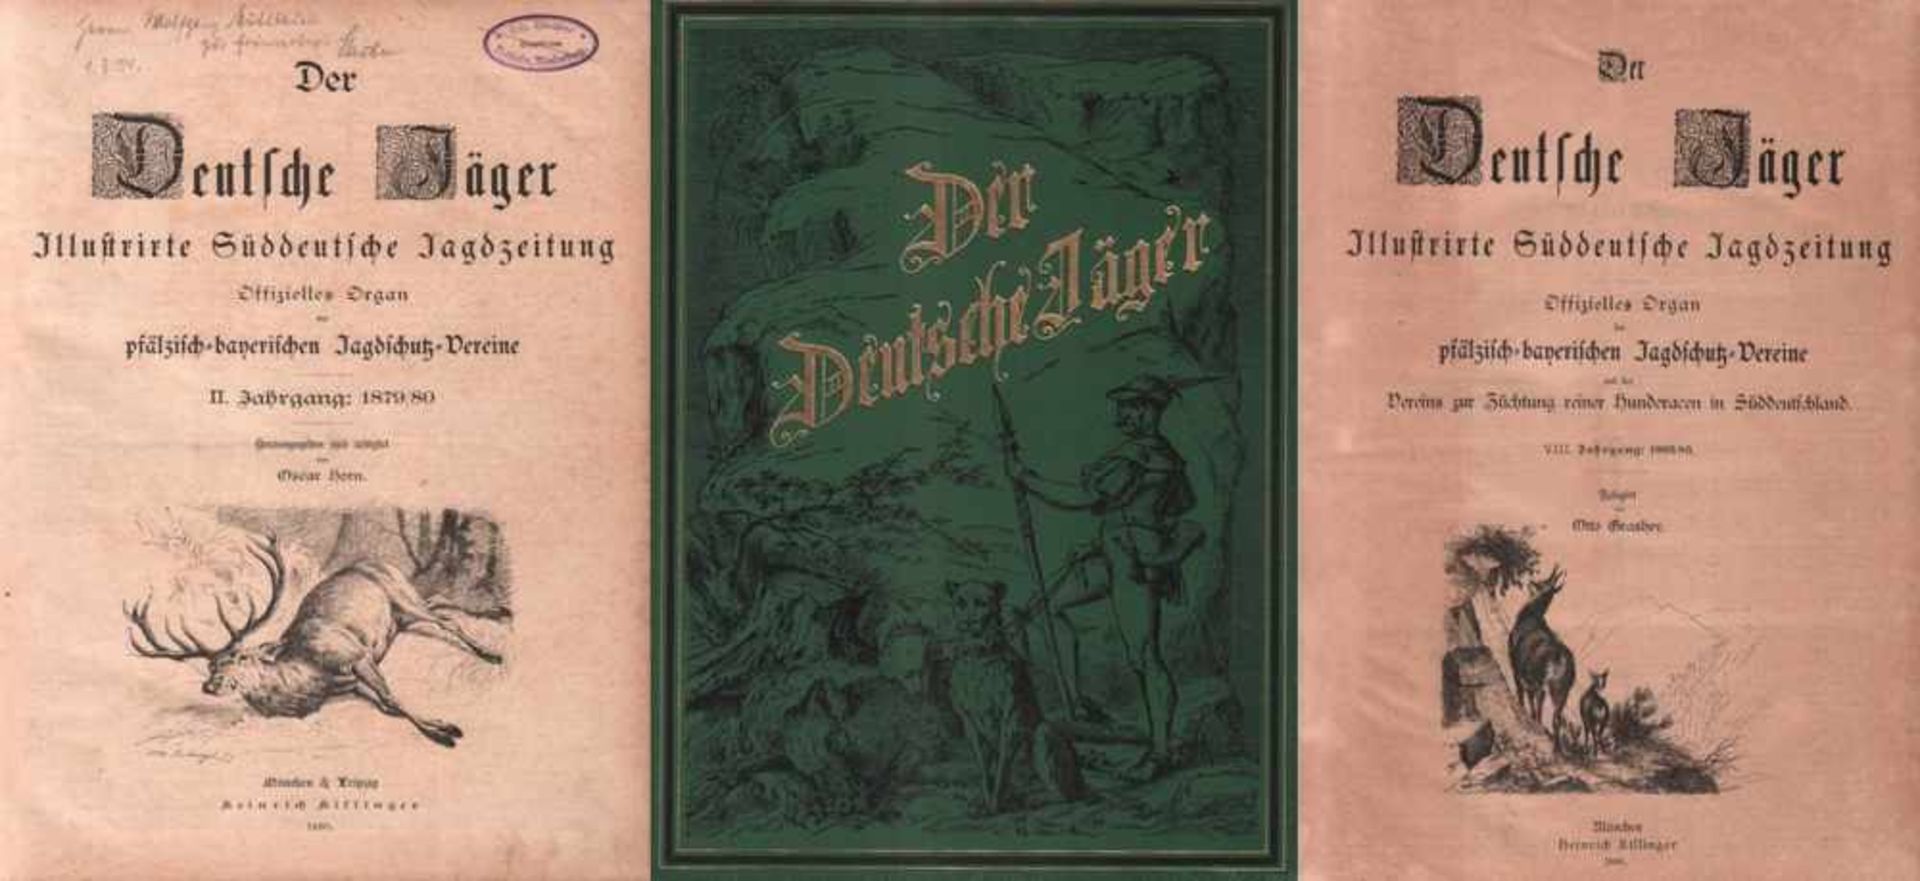 Der Deutsche Jäger.Illustrierte Süddeutsche Jagdzeitung. Offizielles Organ der Pfälzisch-